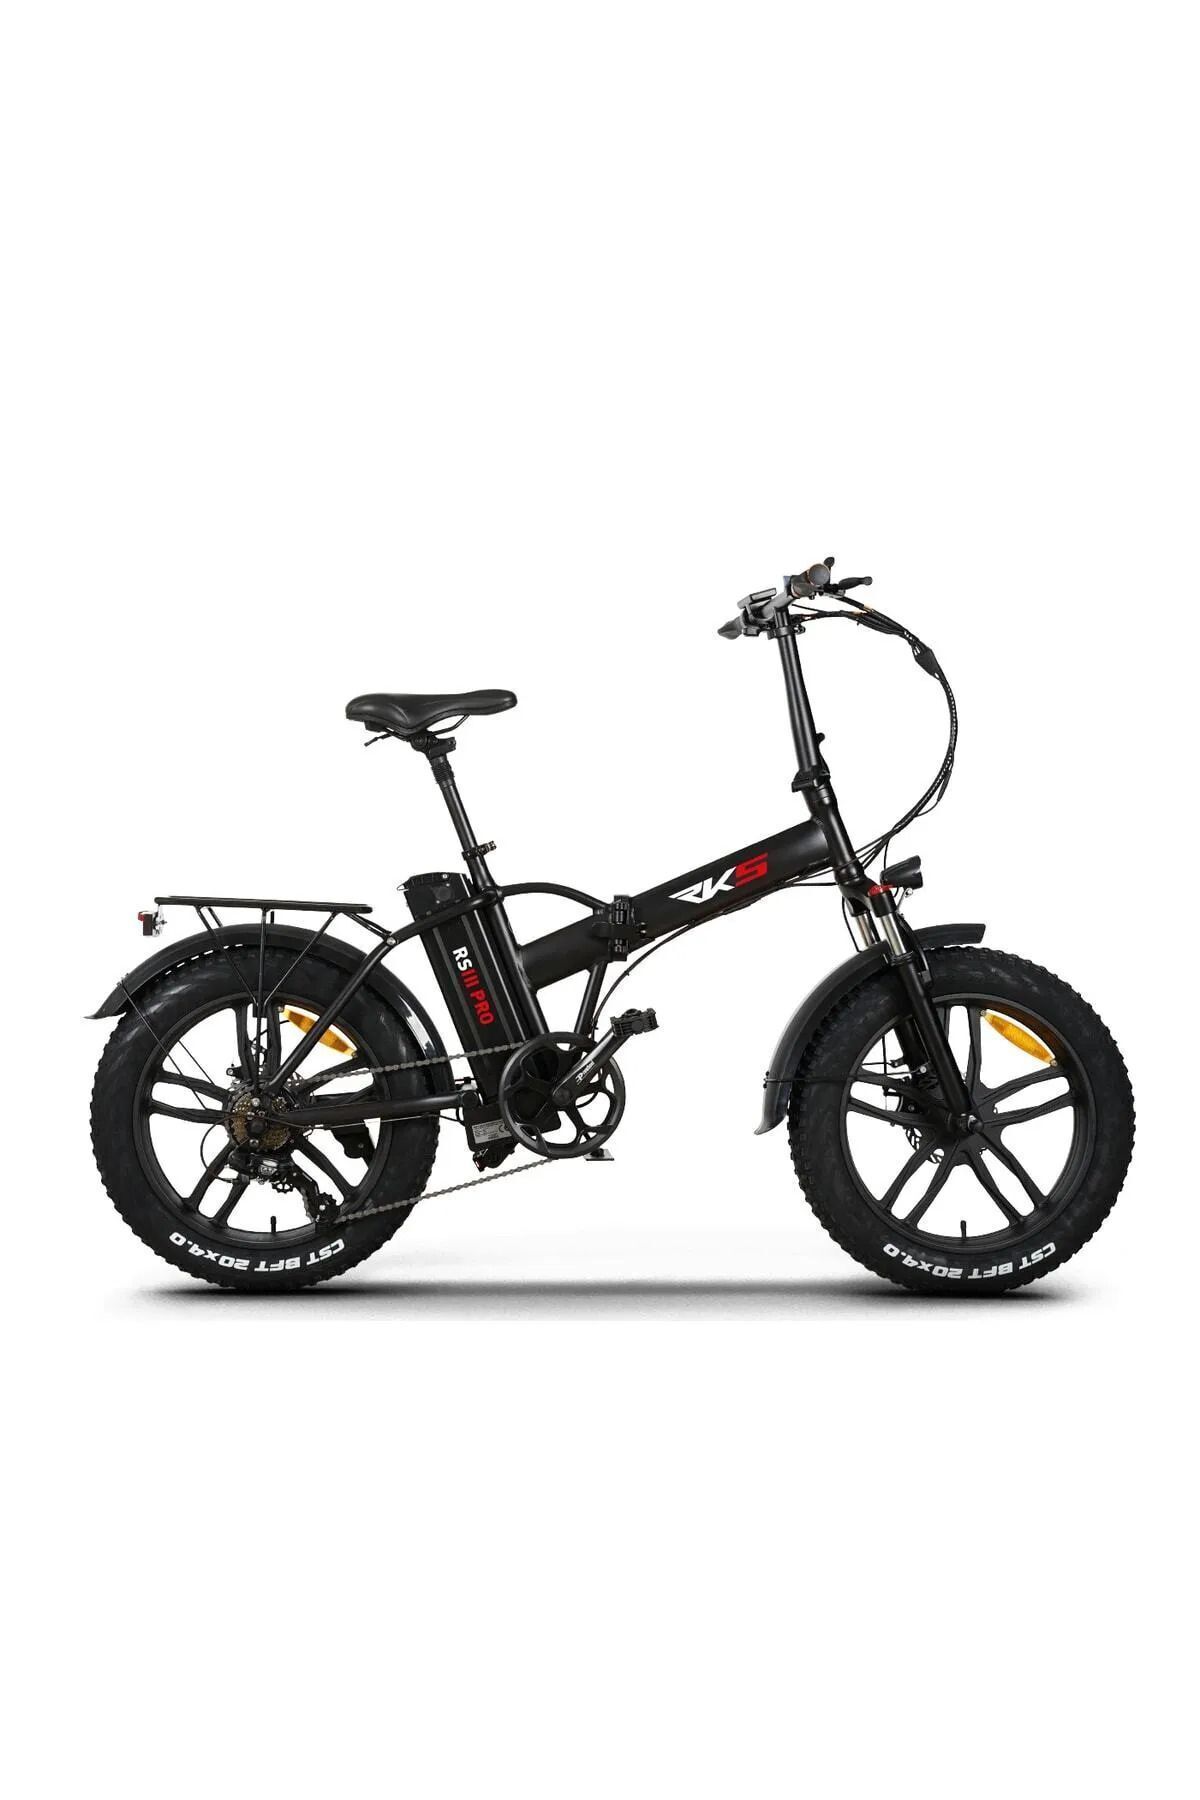 RKS -Elektrikli Bisiklet Rks Rs3 Pro - X Elektrikli Bisiklet - Siyah